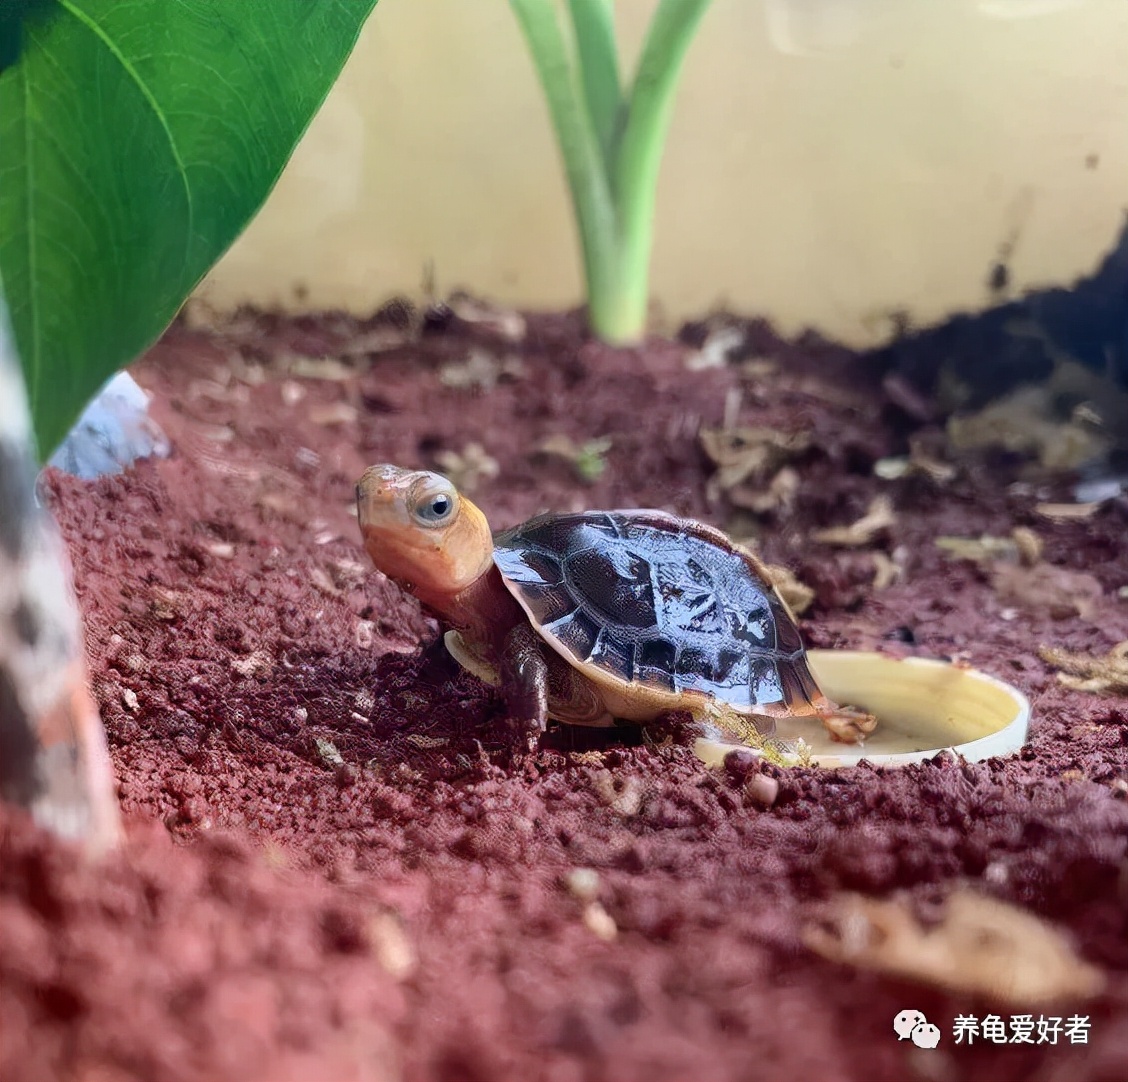 小乌龟什么时候开始冬眠，喂食量要怎么把控比较好？